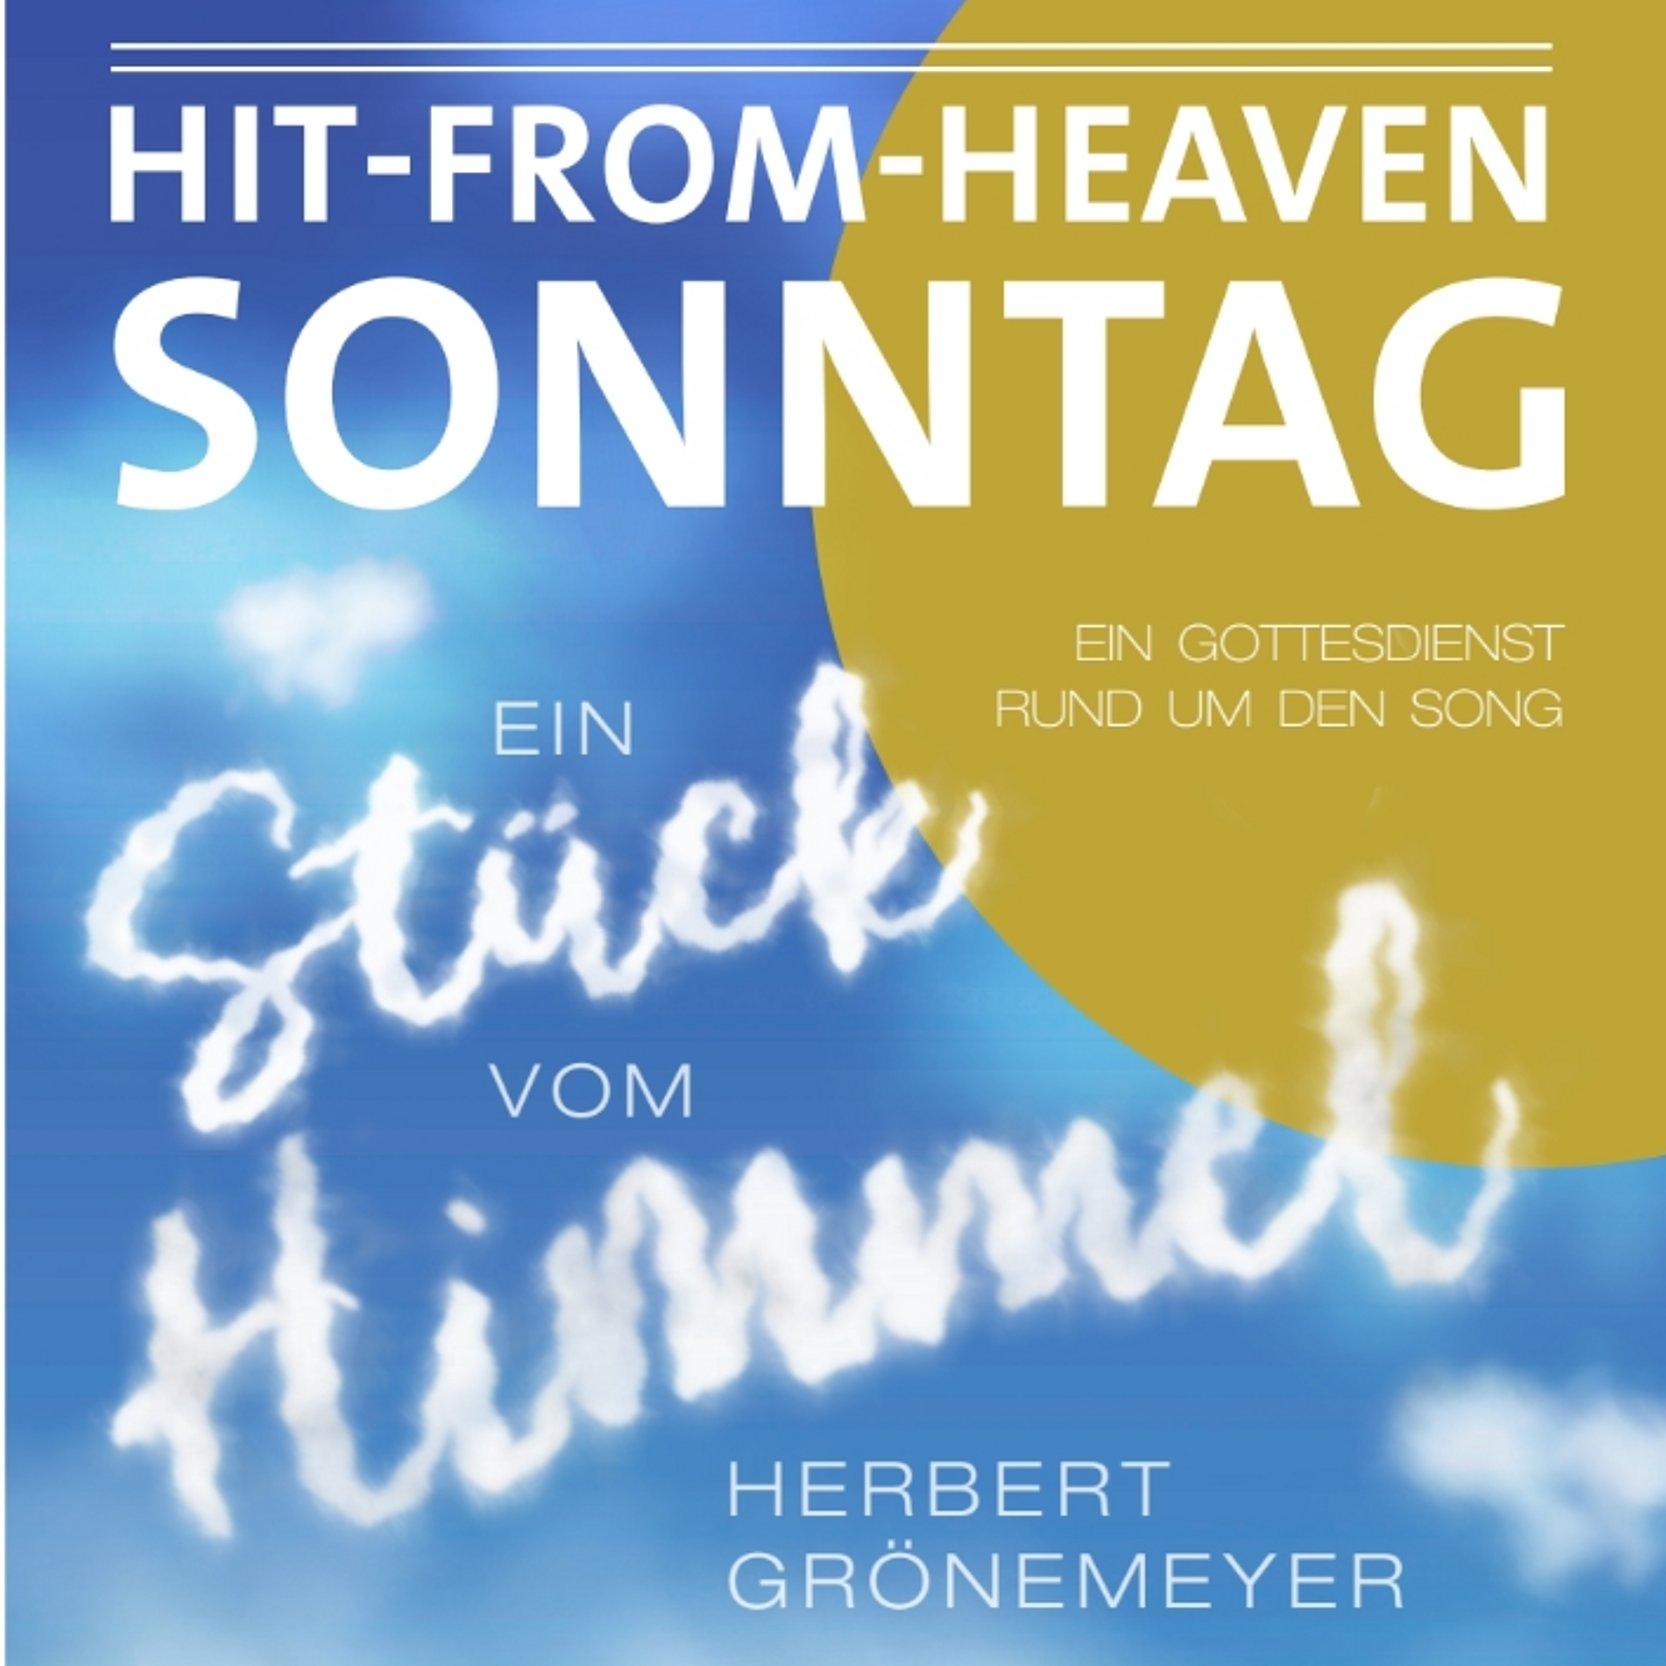 Plakat in Blau und Gold. Sonne und Himmel. Mit Schrift Hit from Heaven Sonntag. Ein Stück vom Himmel. 